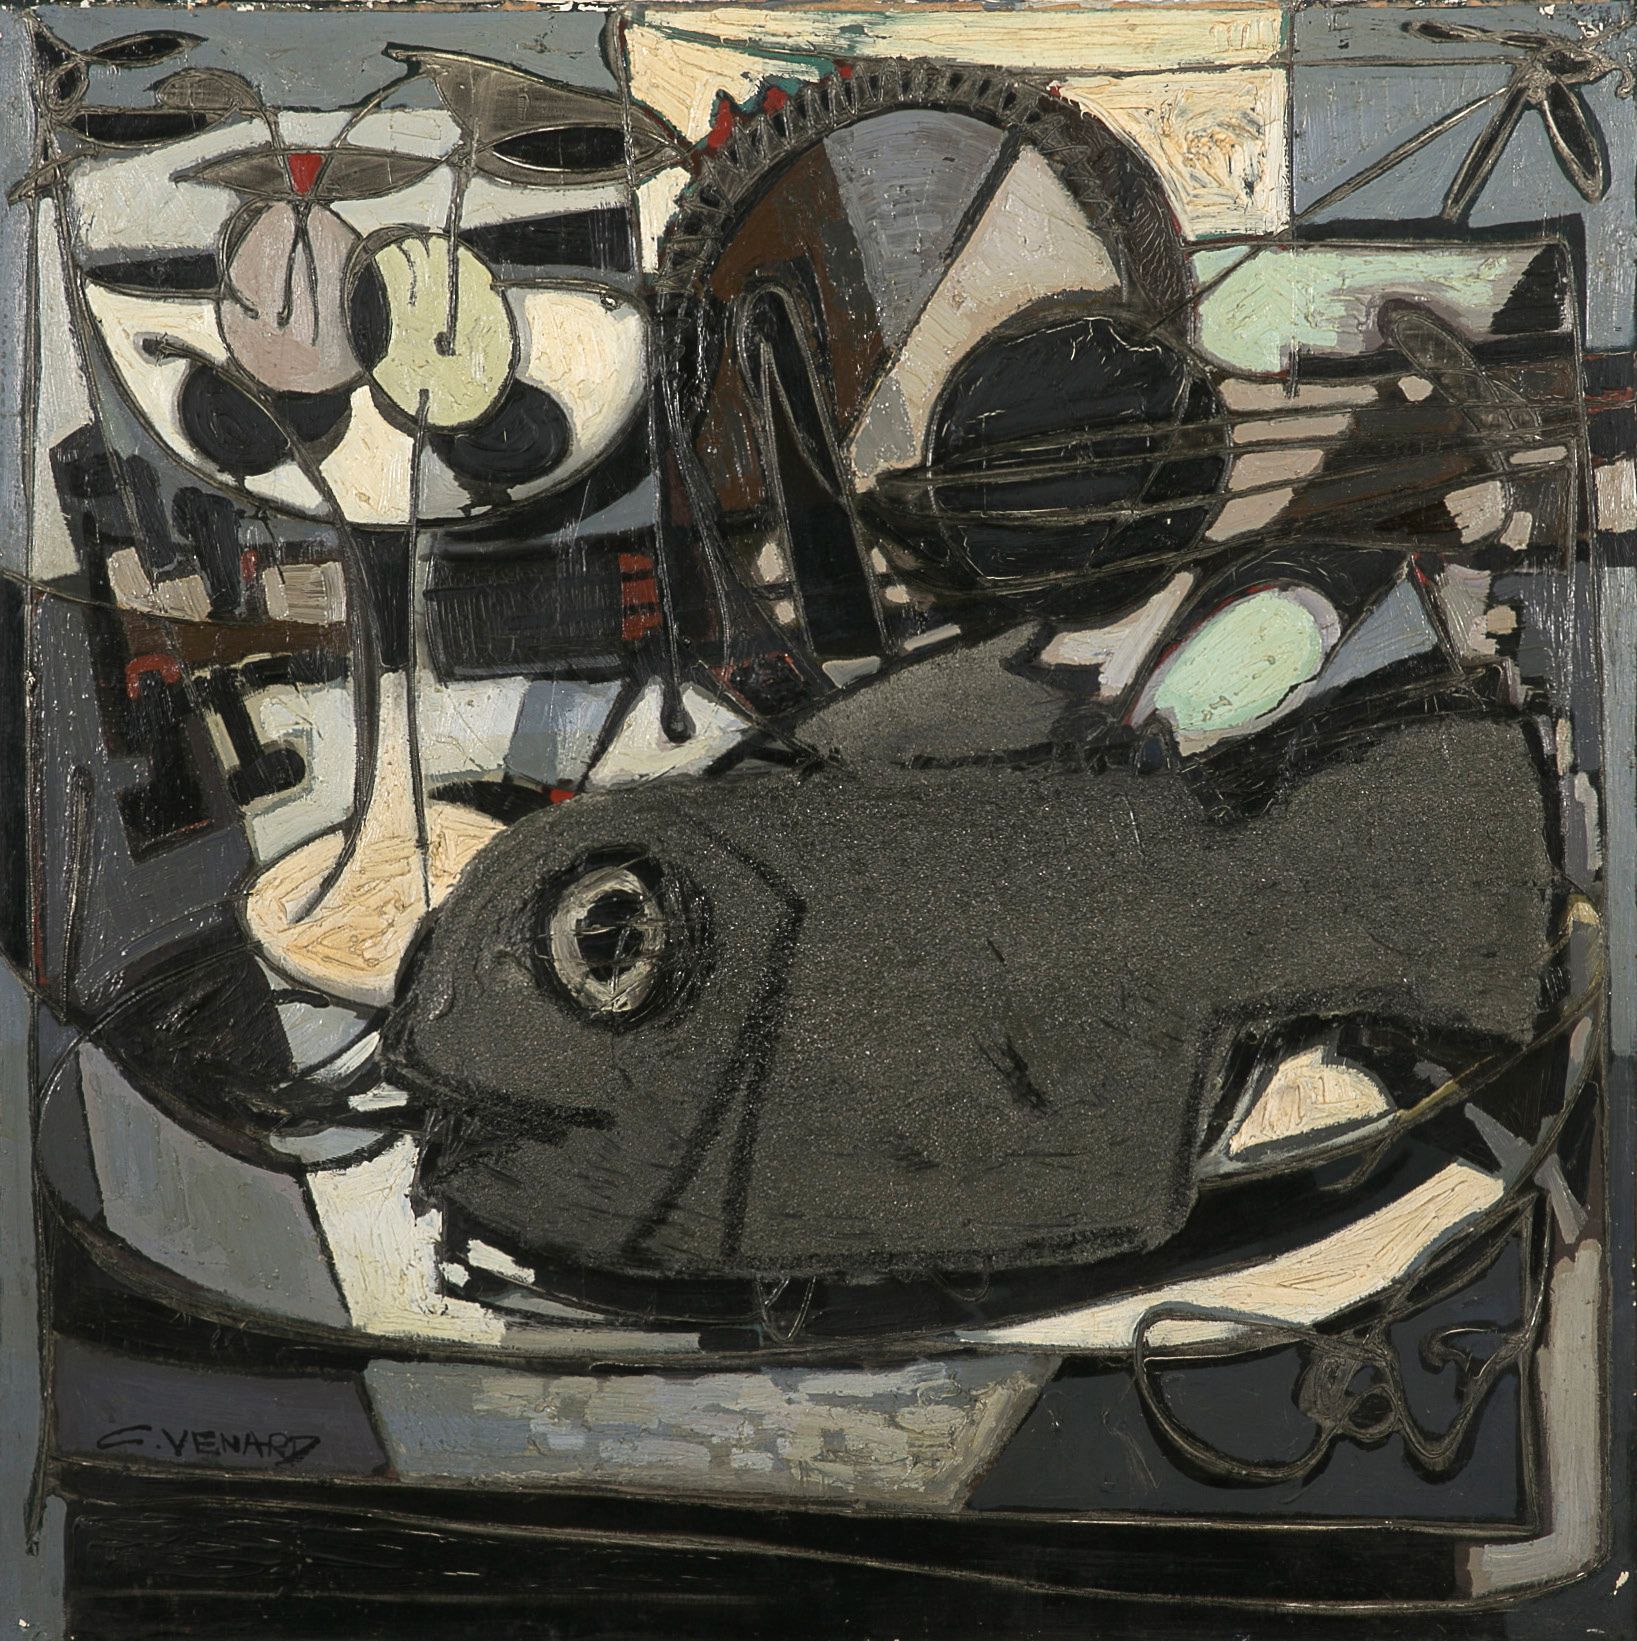 Claude VENARD (1913-1999) 
Pescado

Óleo sobre lienzo, lleva la etiqueta de la g&hellip;